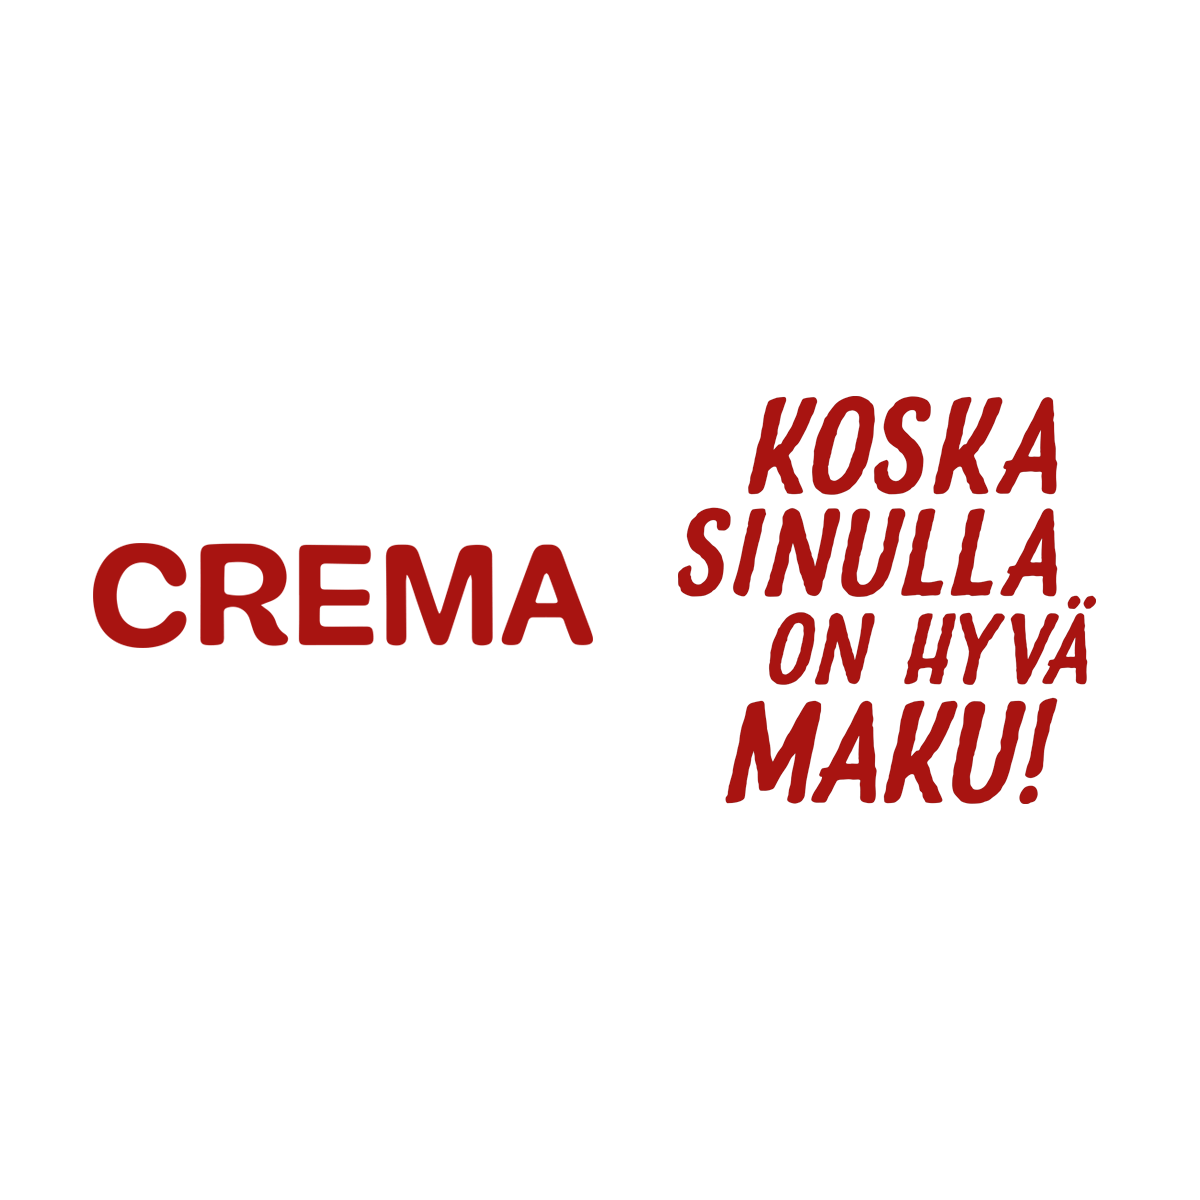 www.crema.fi